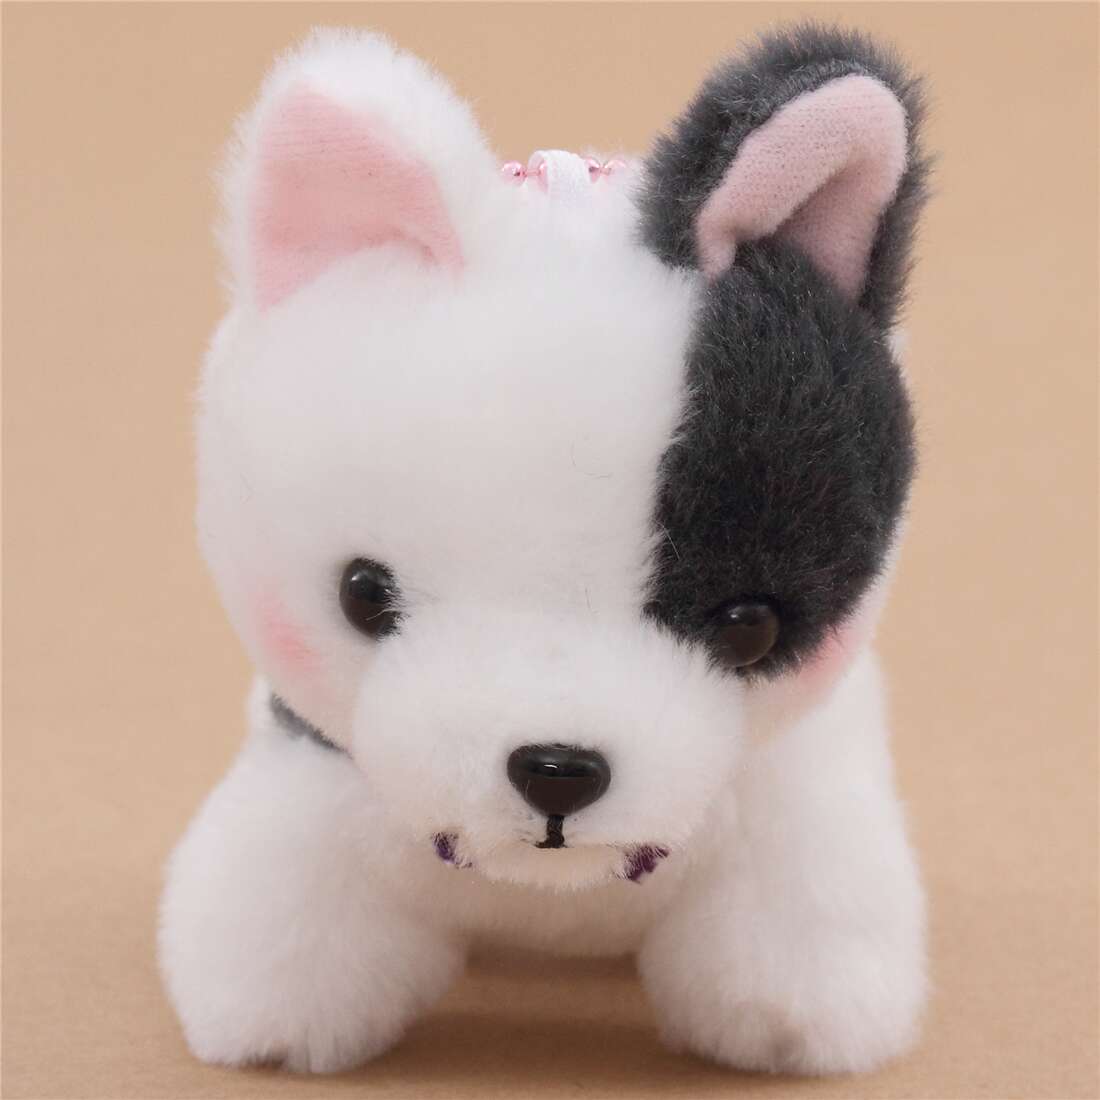 small white dog stuffed animal